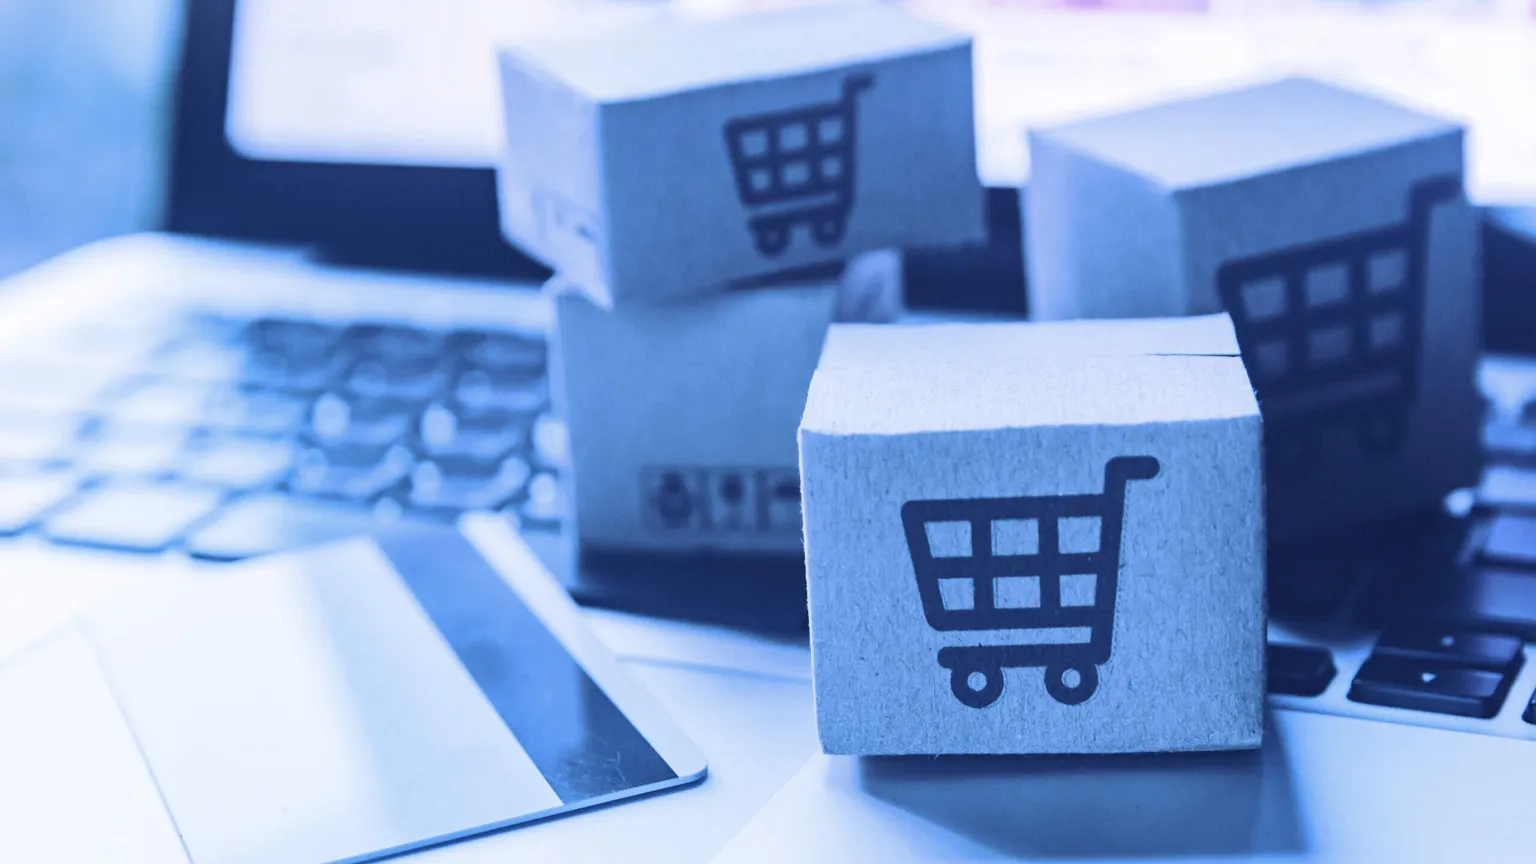 Online shopping. Image: Shutterstock